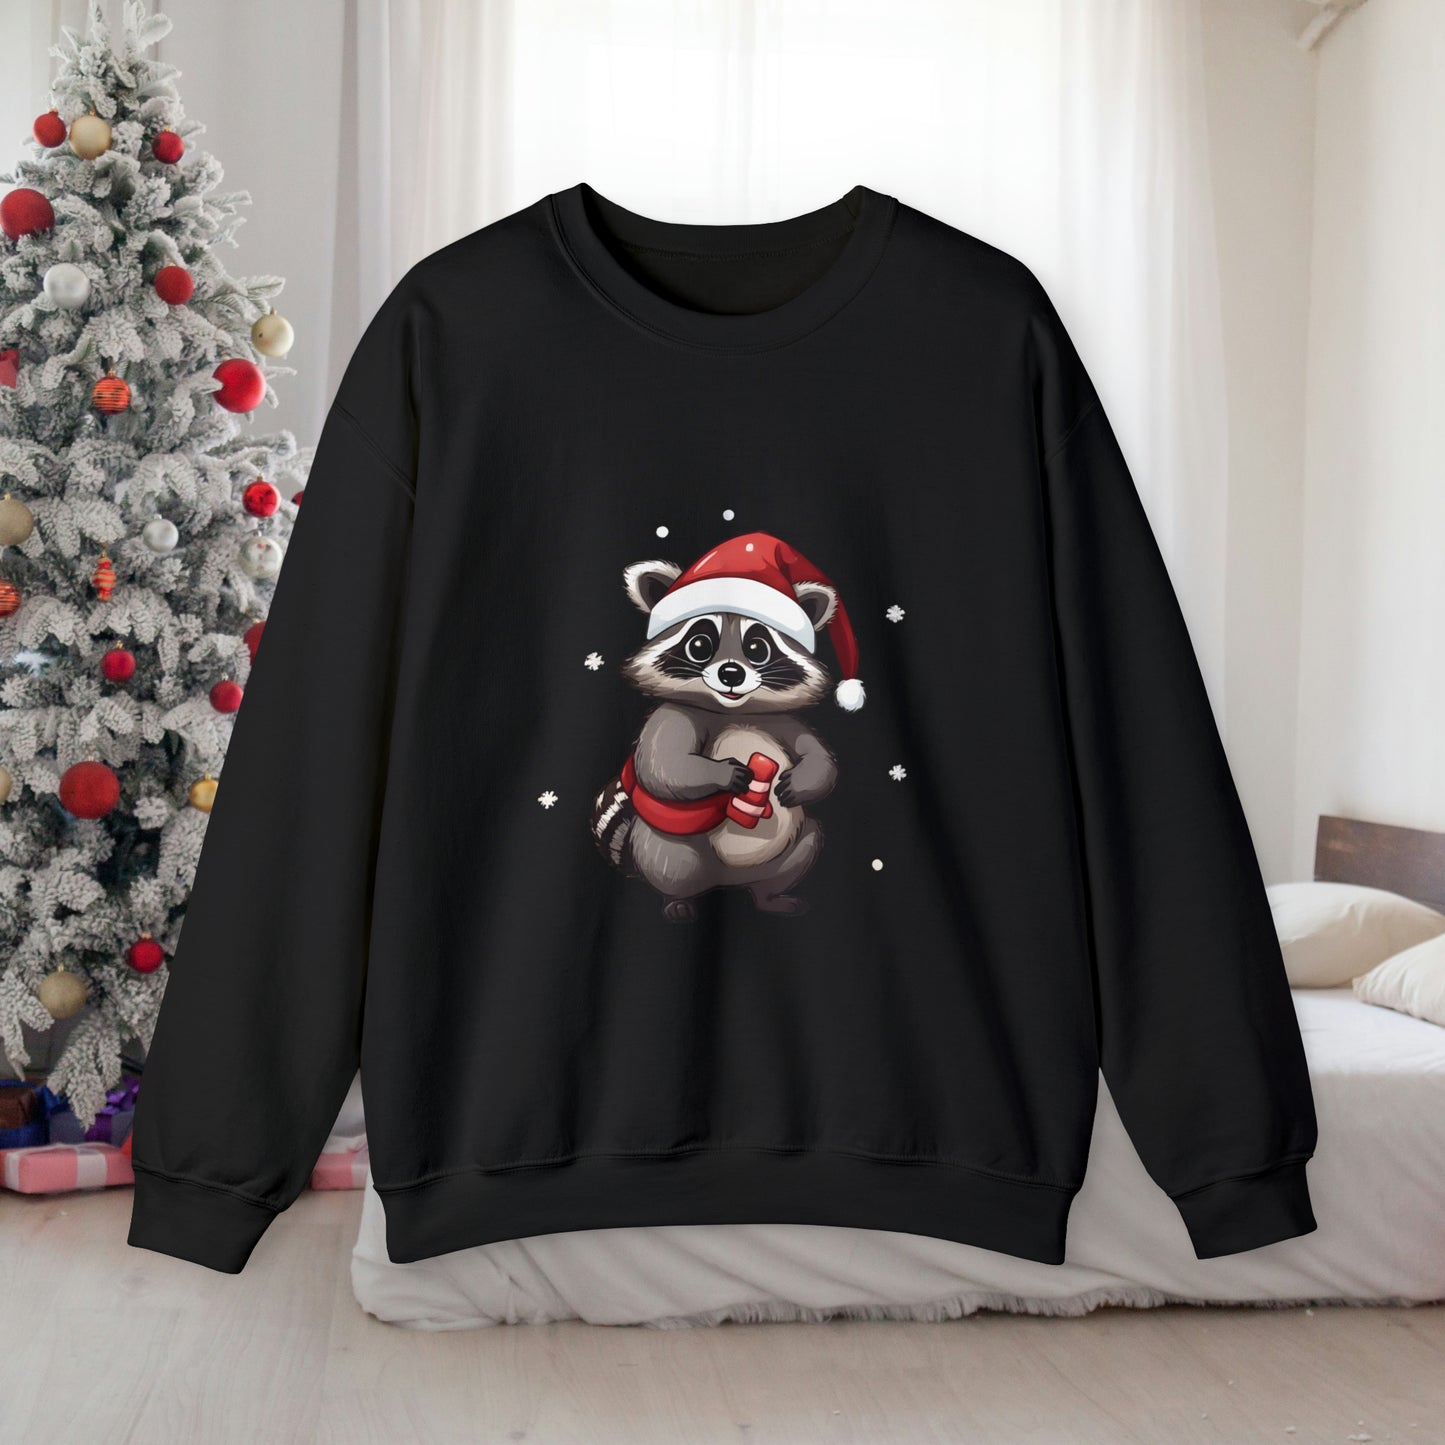 Christmas Raccoon Sweatshirt With Adorable Raccoon